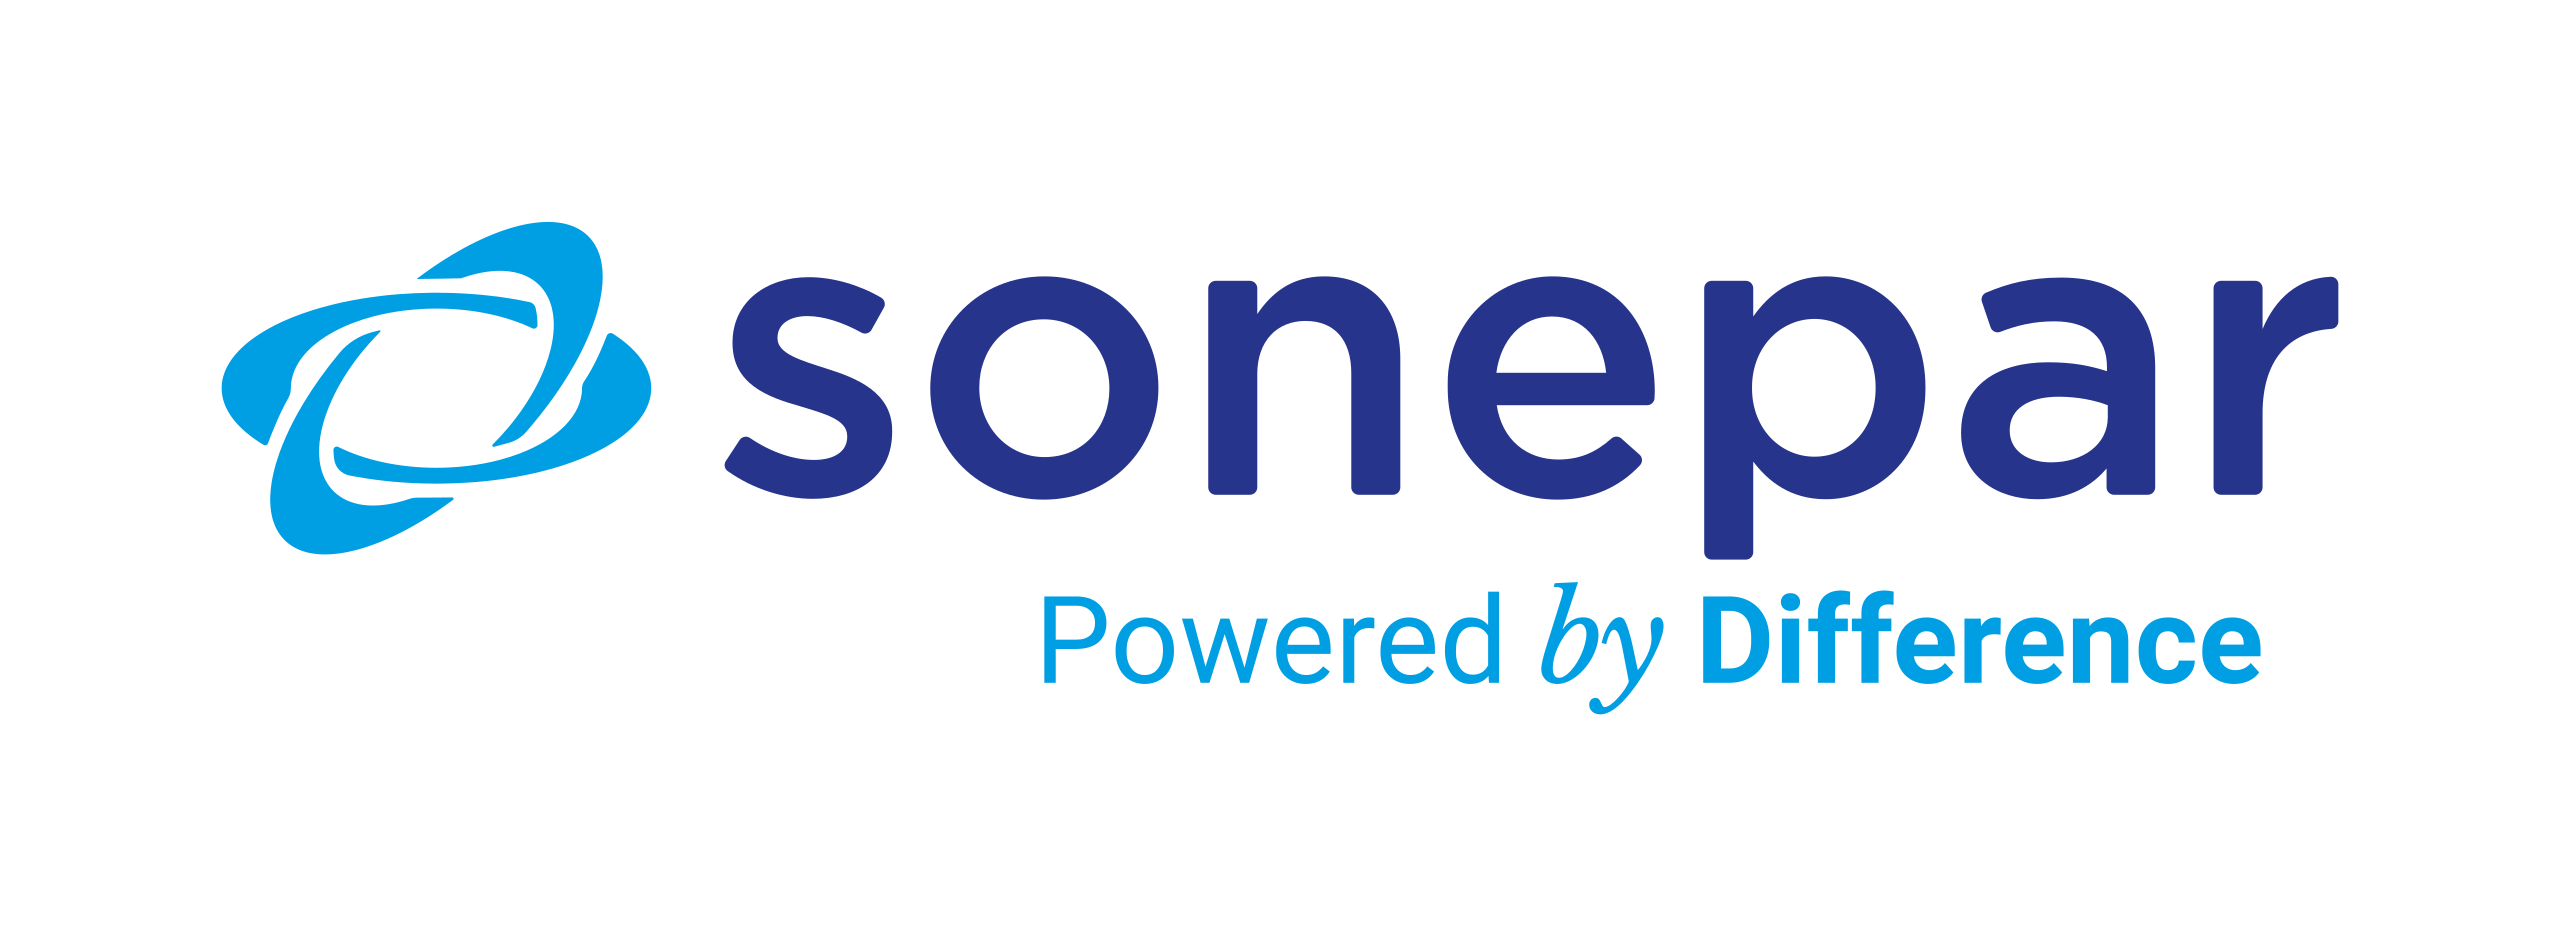 Sonepar logo CMJN Tagline